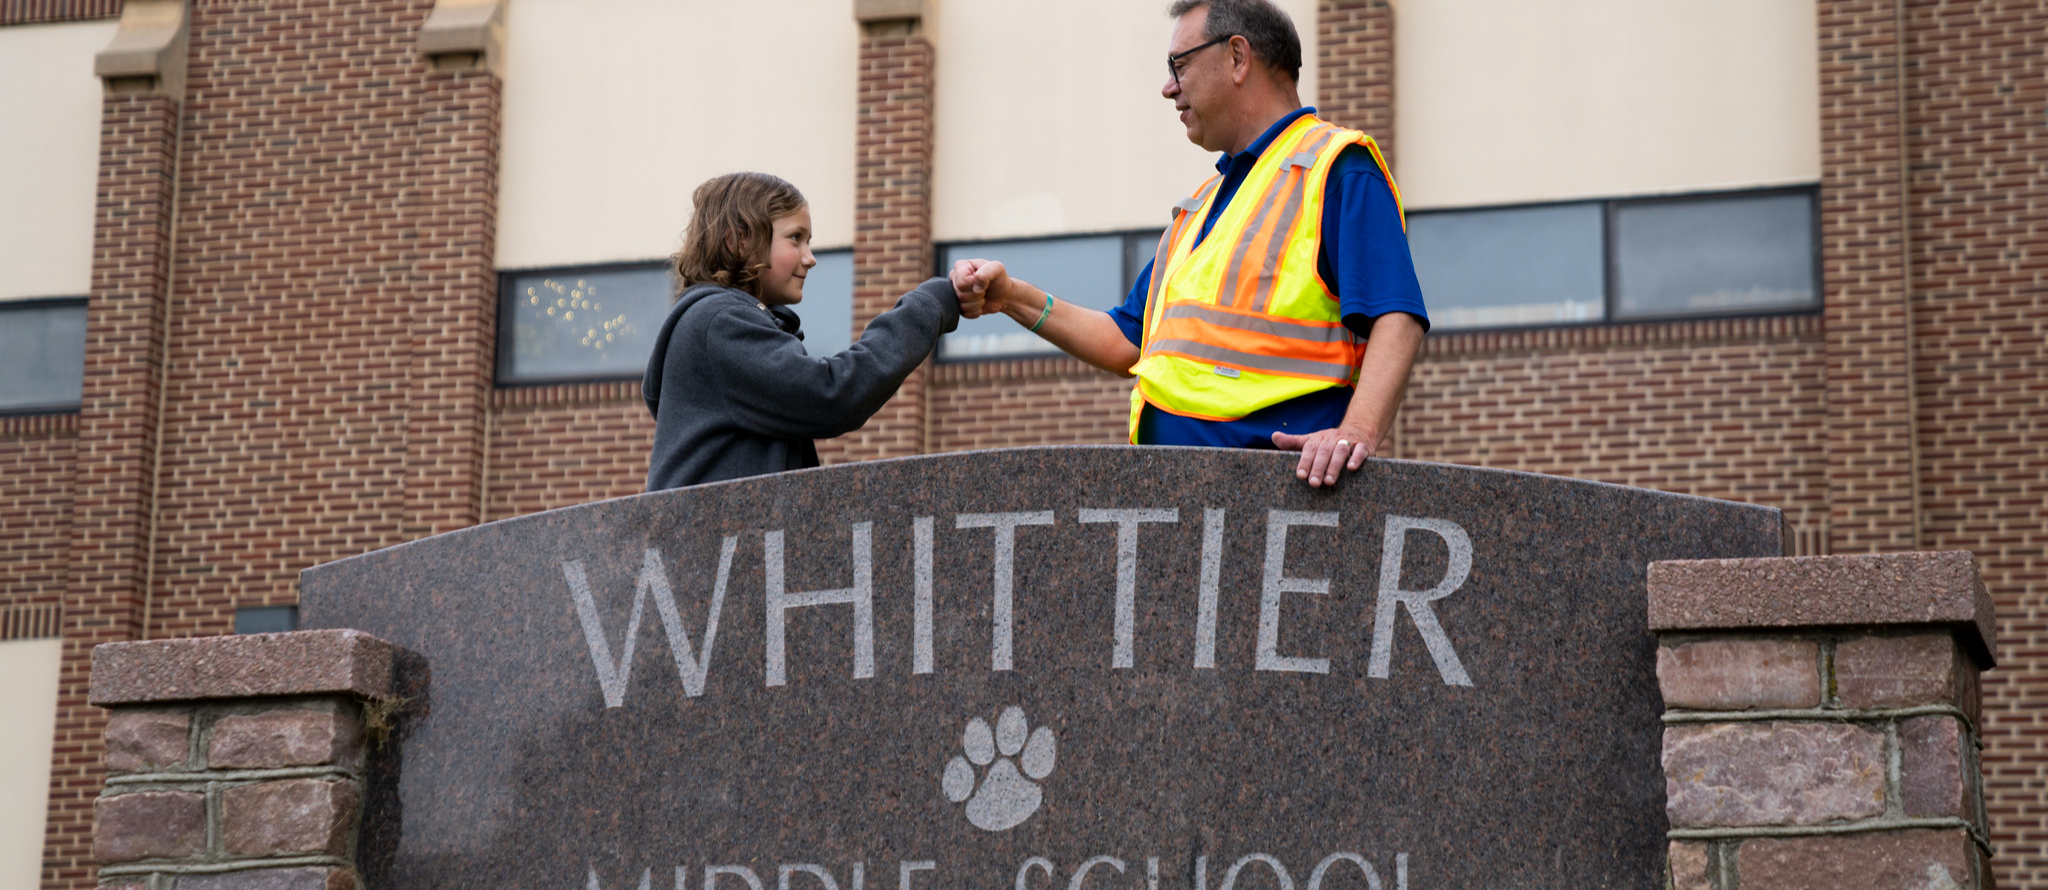 Whittier Middle School